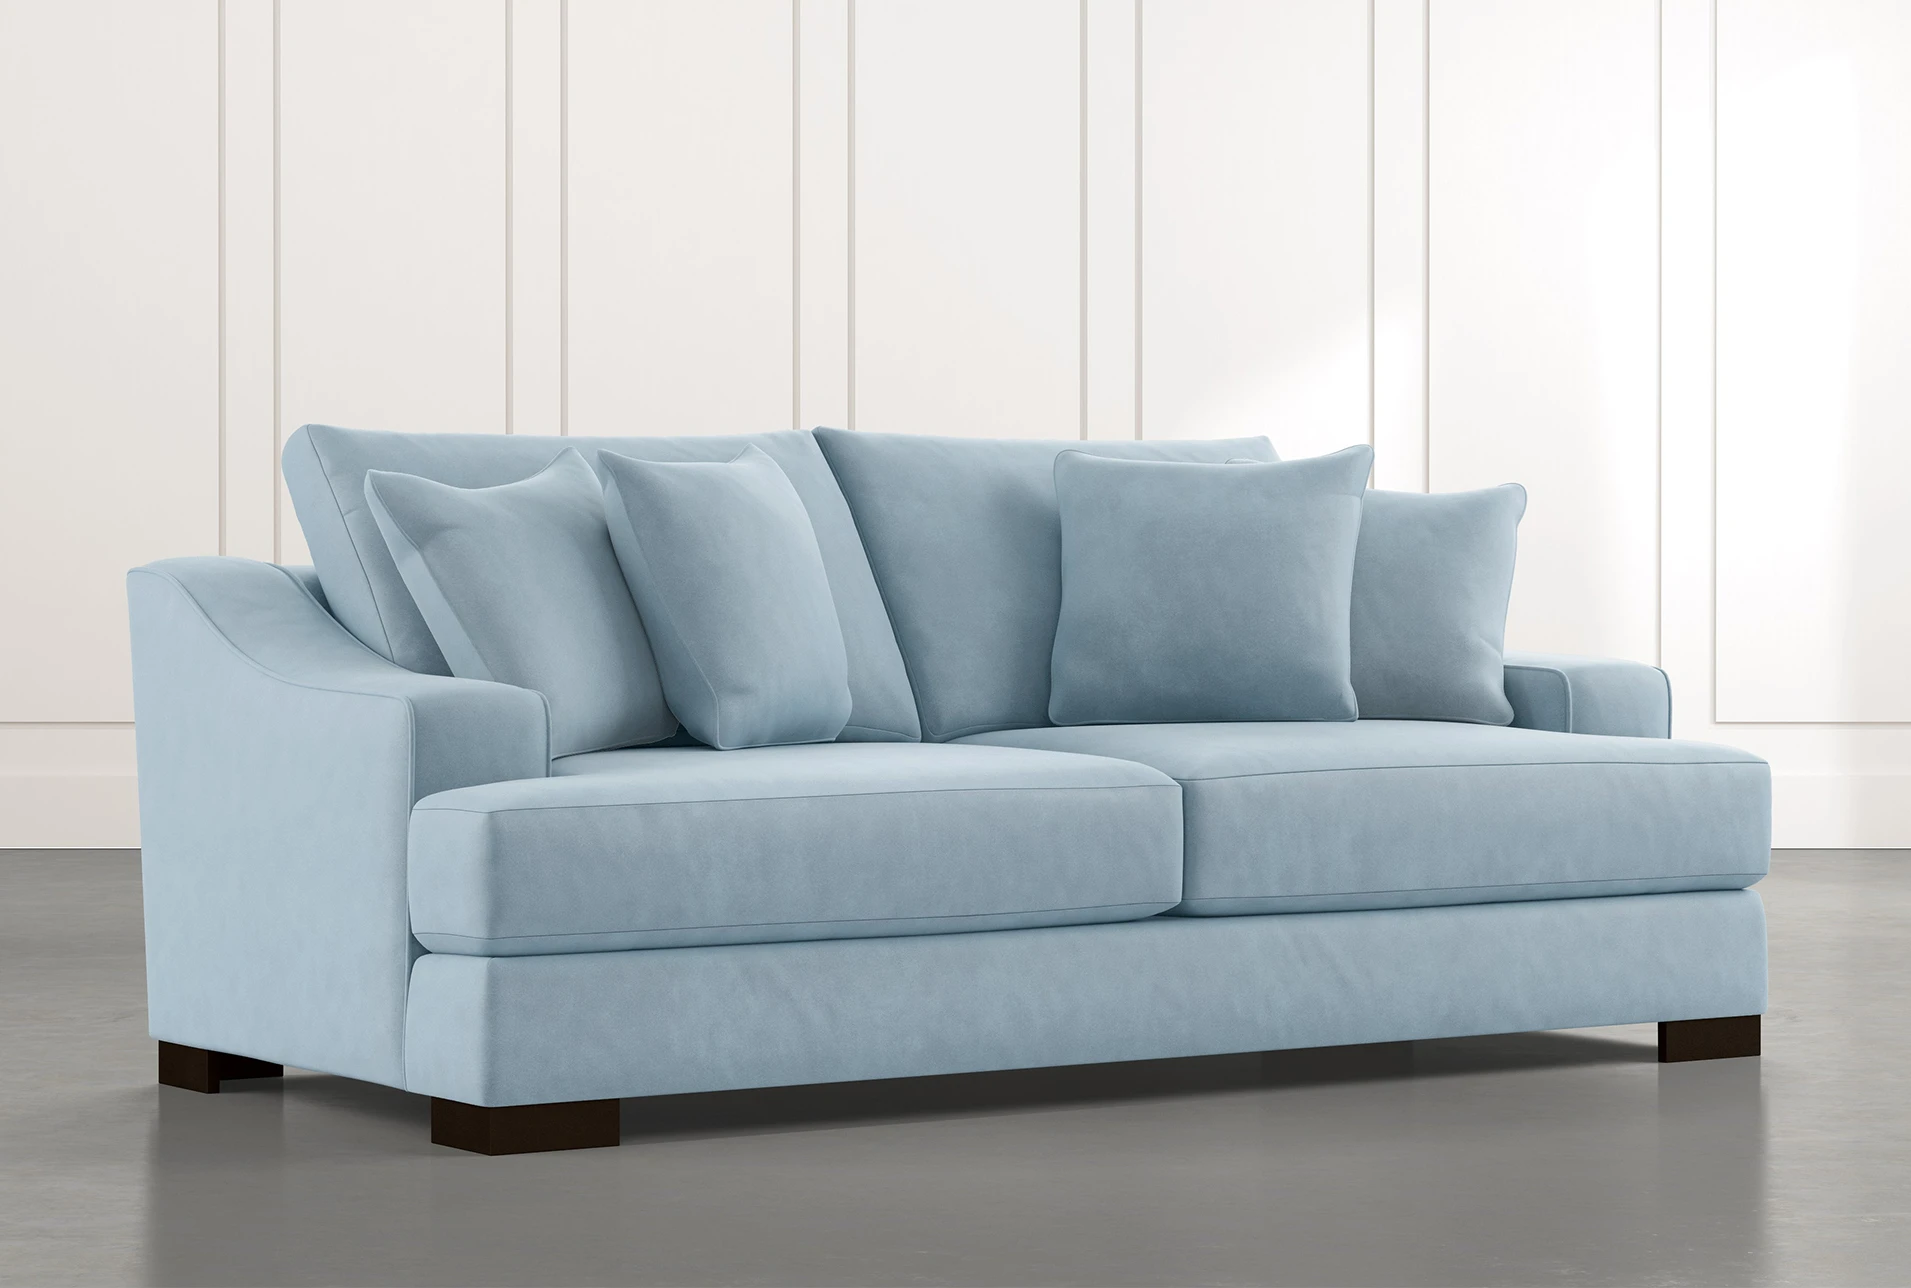 Grey Living Room Light Colored Rug Blue Sofa